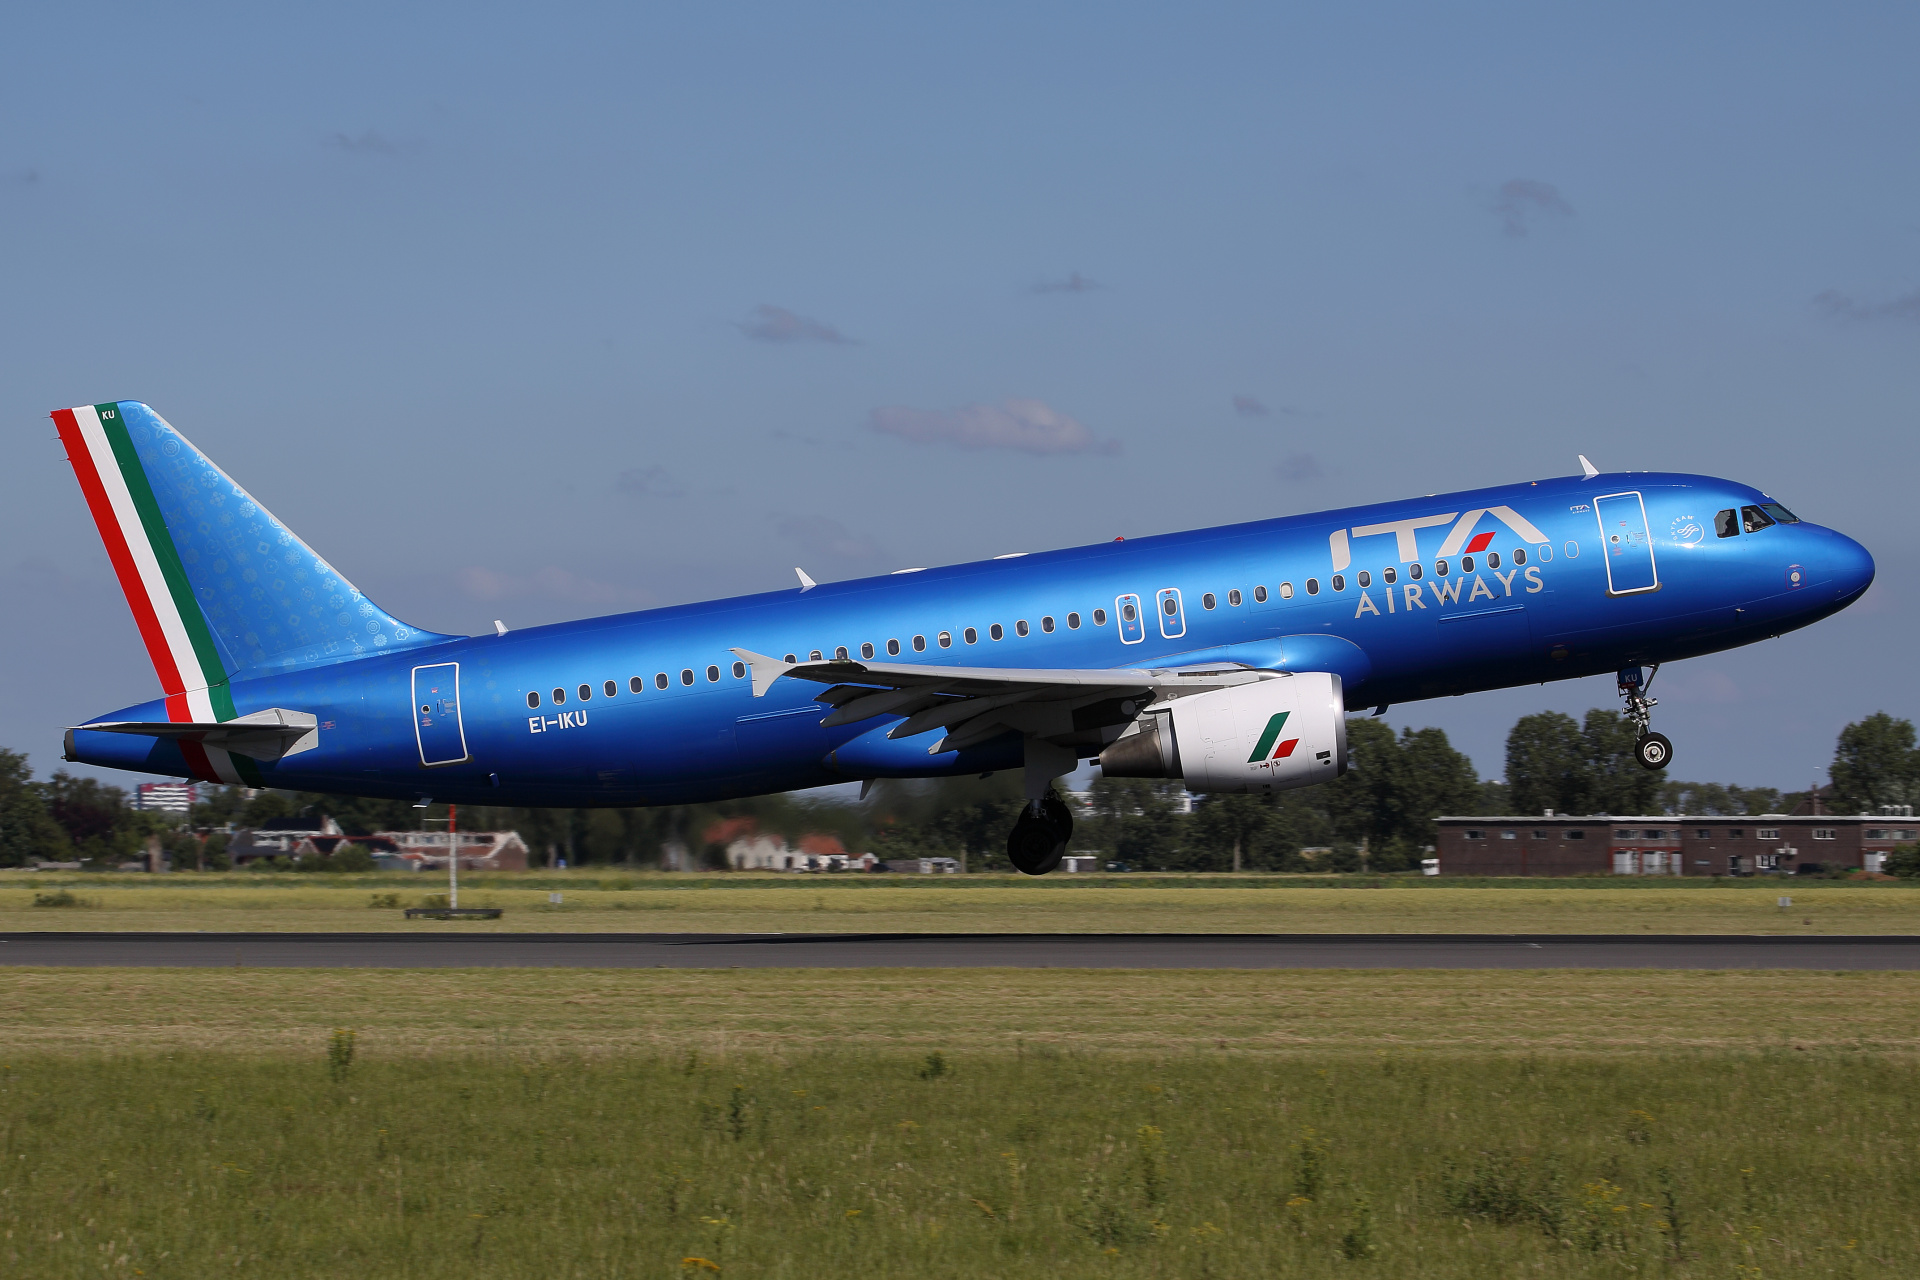 EI-IKU, ITA Airways (Aircraft » Schiphol Spotting » Airbus A320-200)